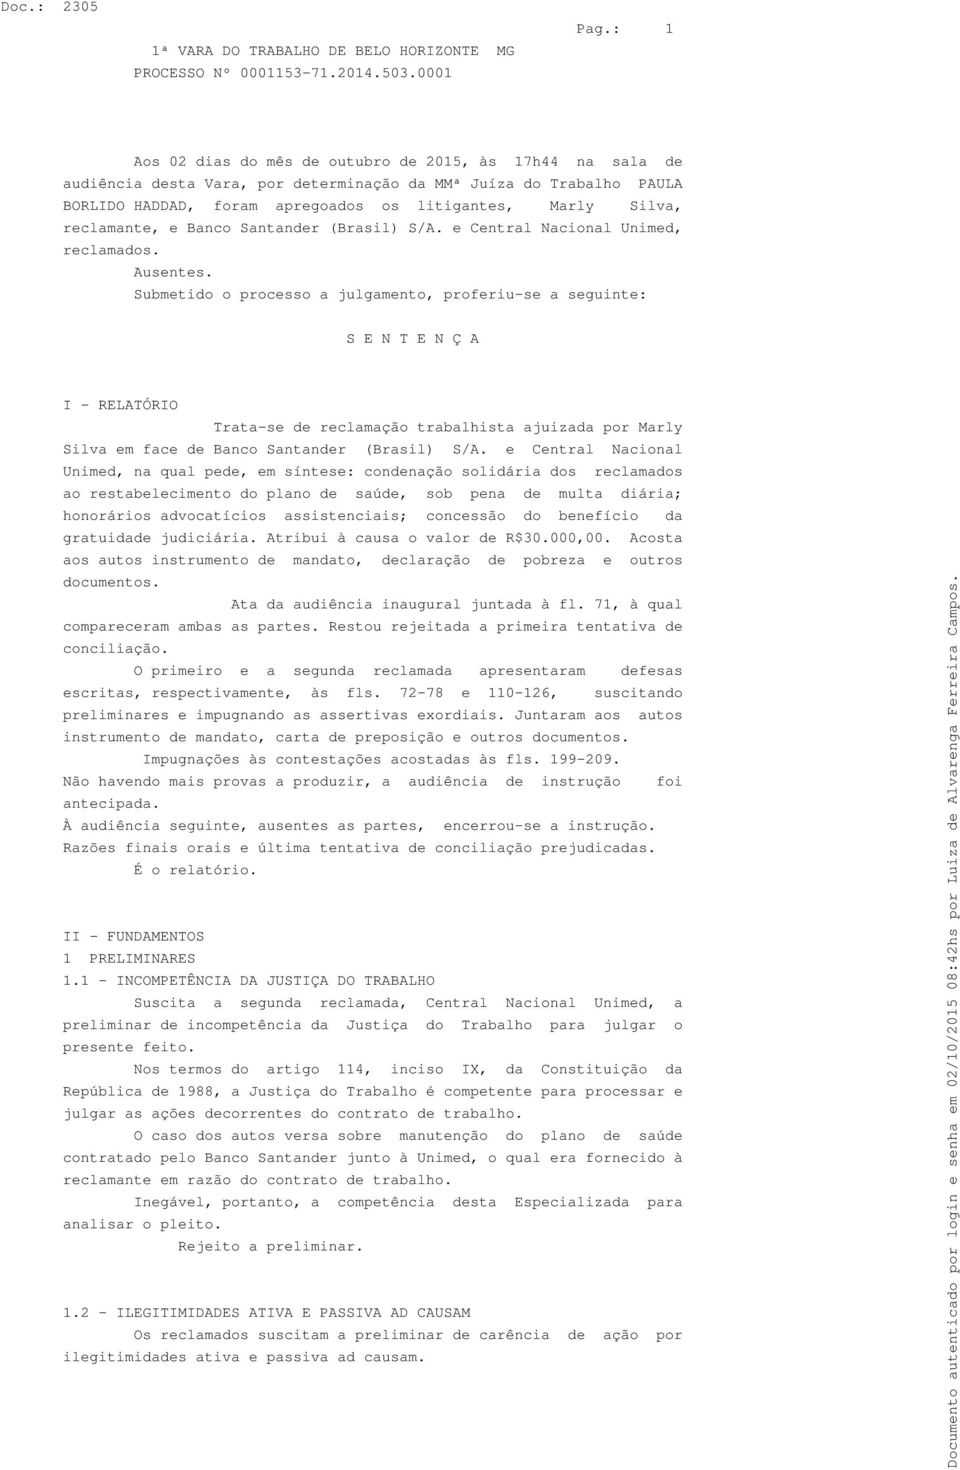 reclamante, e Banco Santander (Brasil) S/A. e Central Nacional Unimed, reclamados. Ausentes.